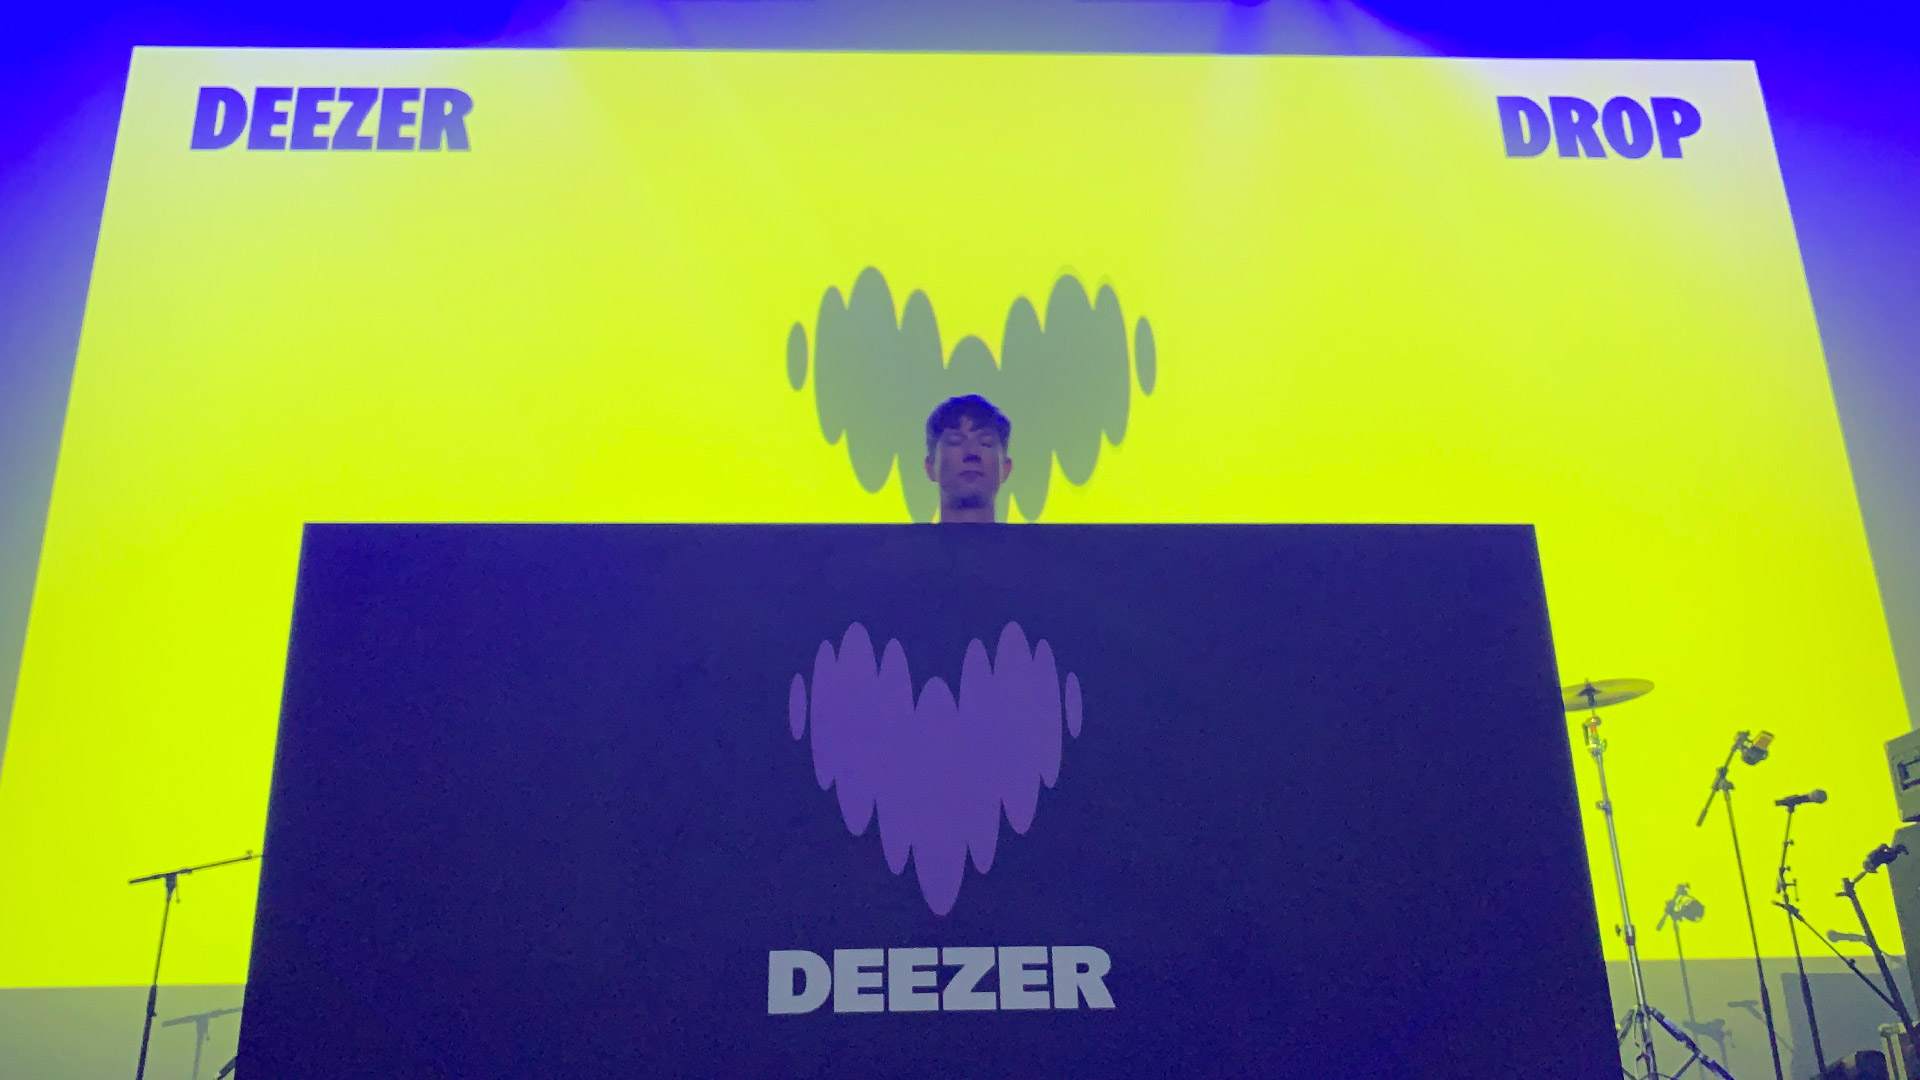  Диджей стоит за кабинкой с новым логотипом Deezer